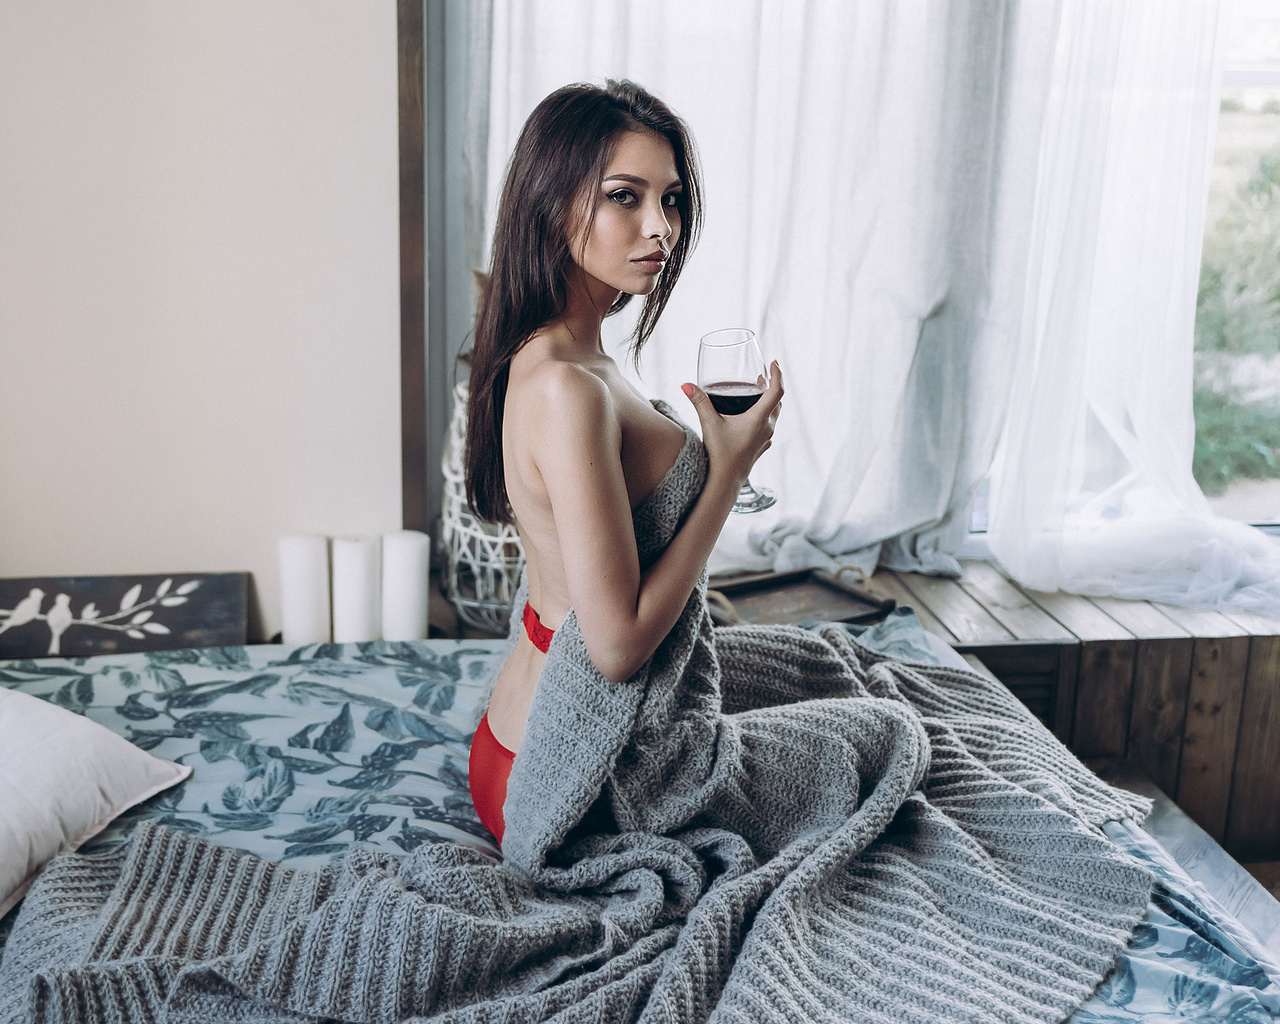 women, brunette, drinking glass, kneeling, in bed, red lingerie, boobs, wine, pillow, window